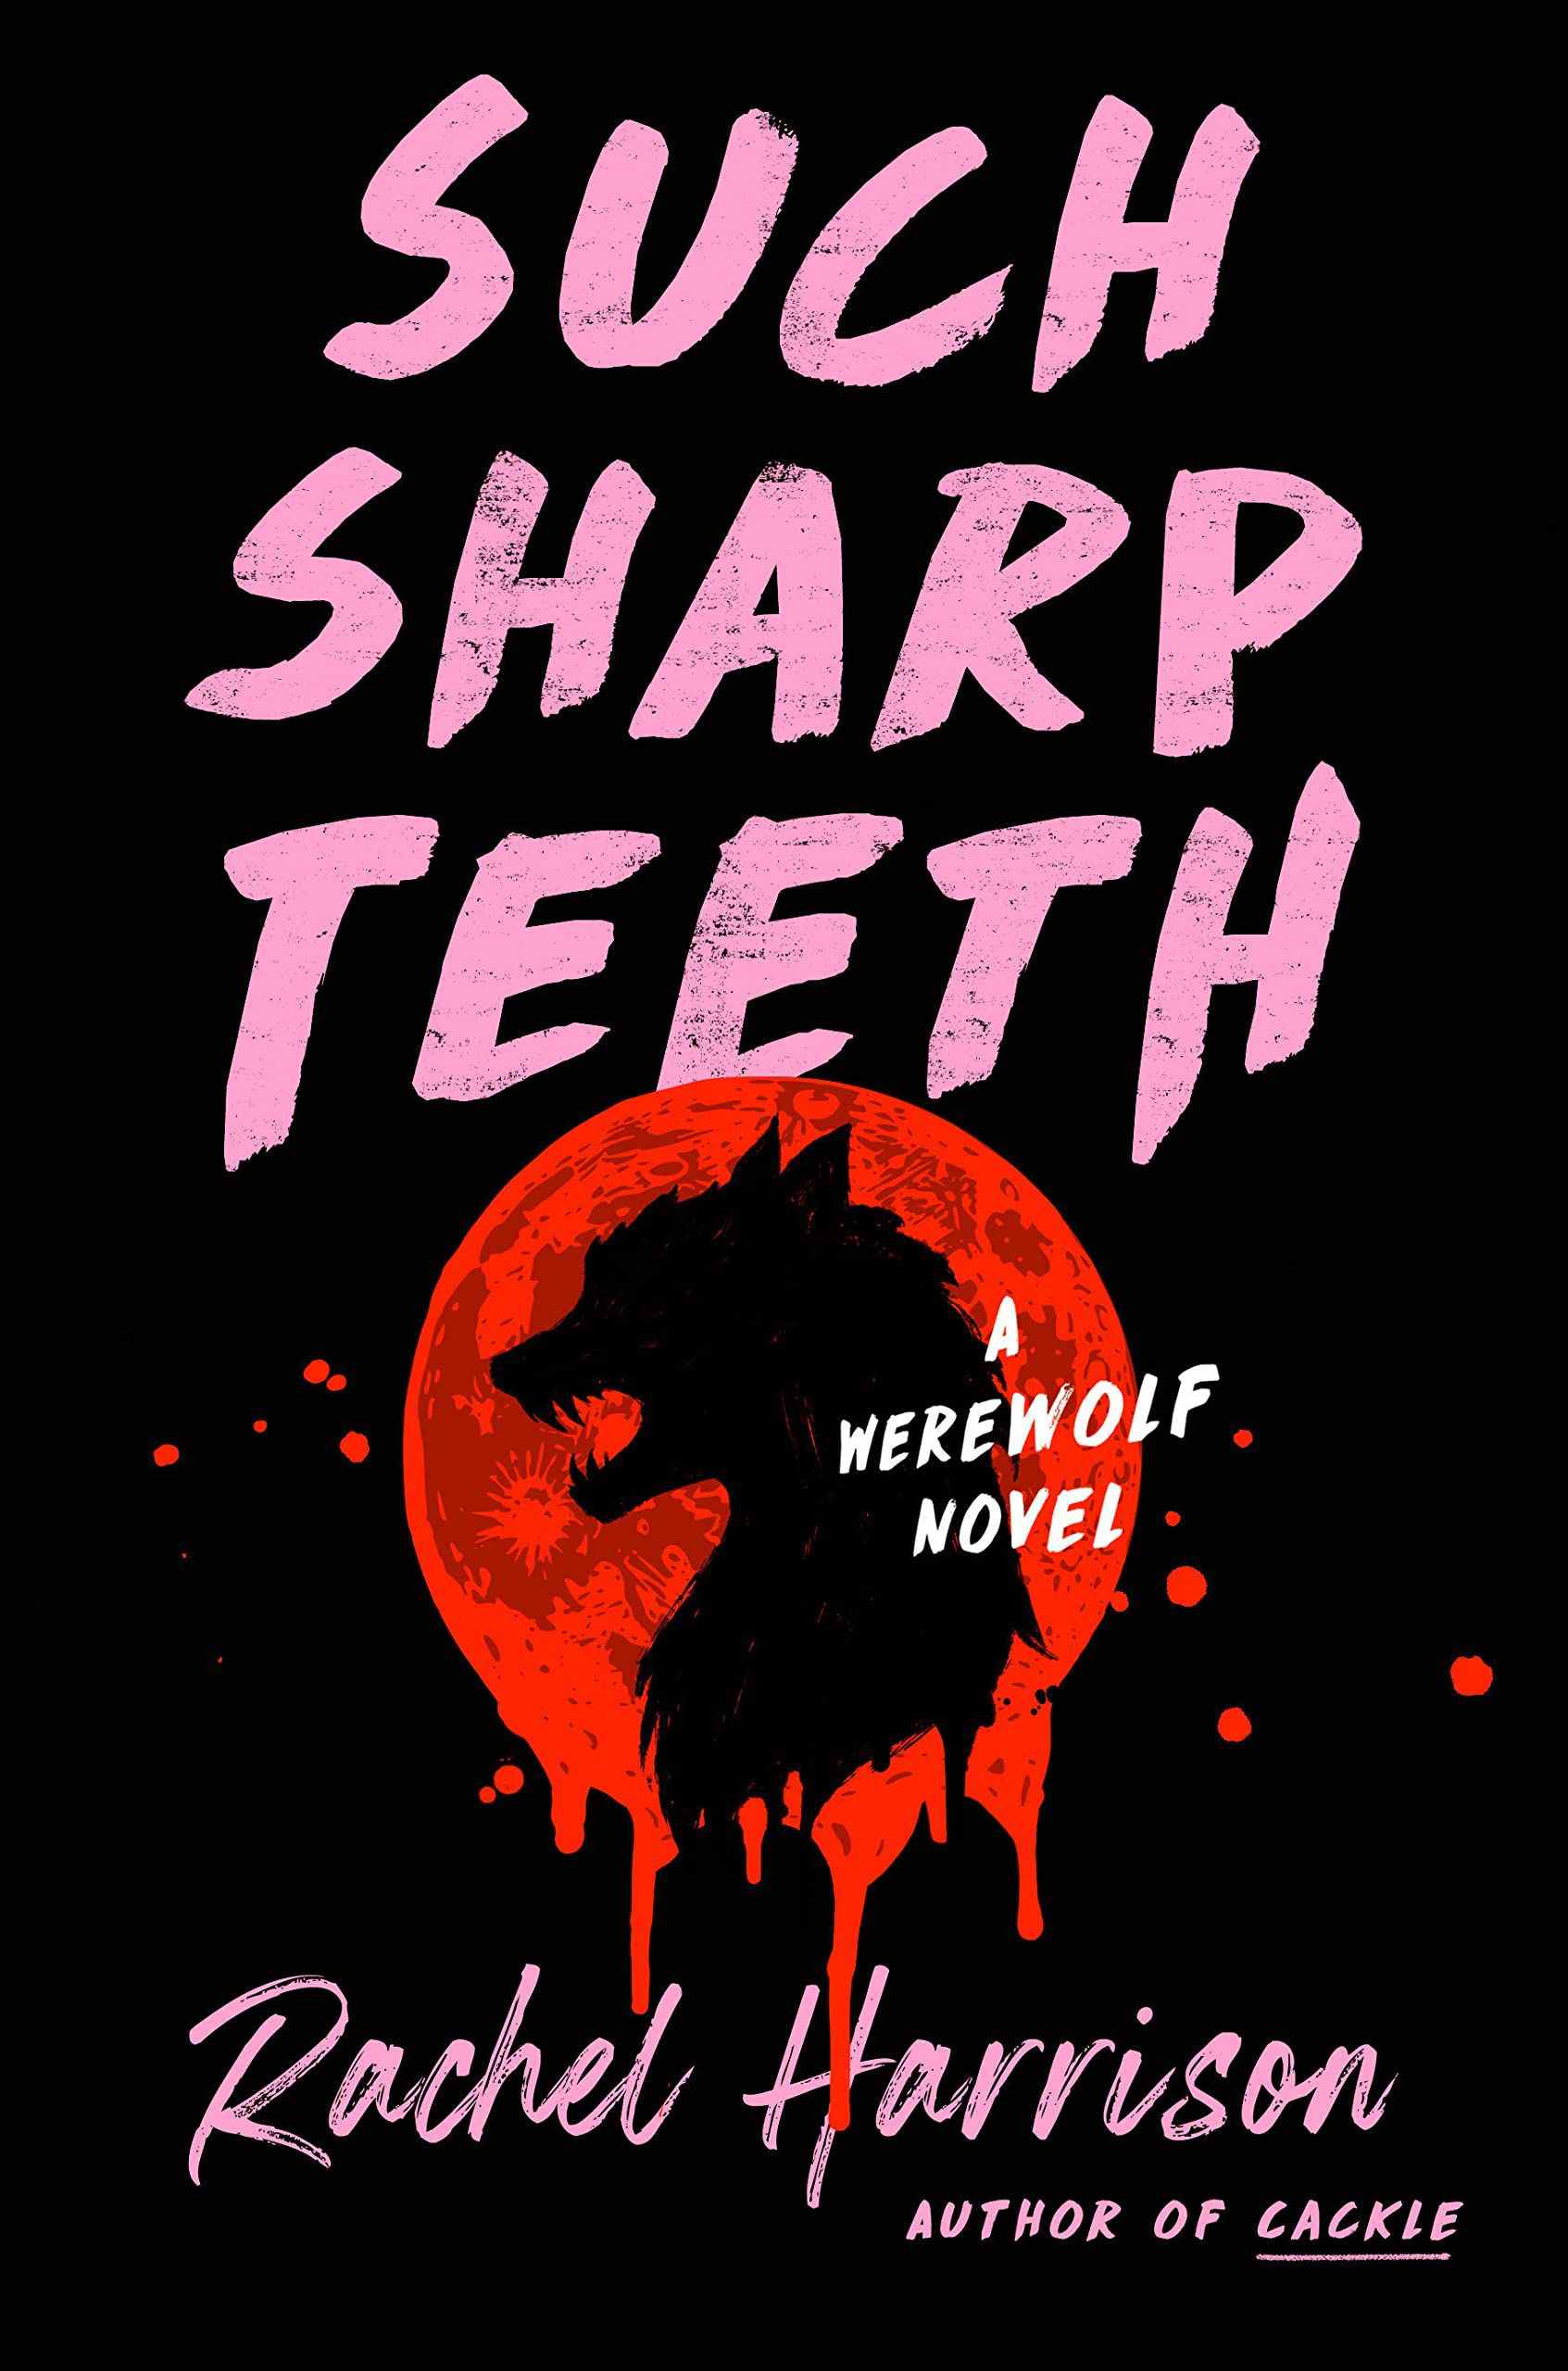 Such Sharp Teeth par Rachel Harrison - couverture de livre - silhouette noire d'une tête de loup-garou contre une lune rouge sang, sur fond noir et texte rose pâle